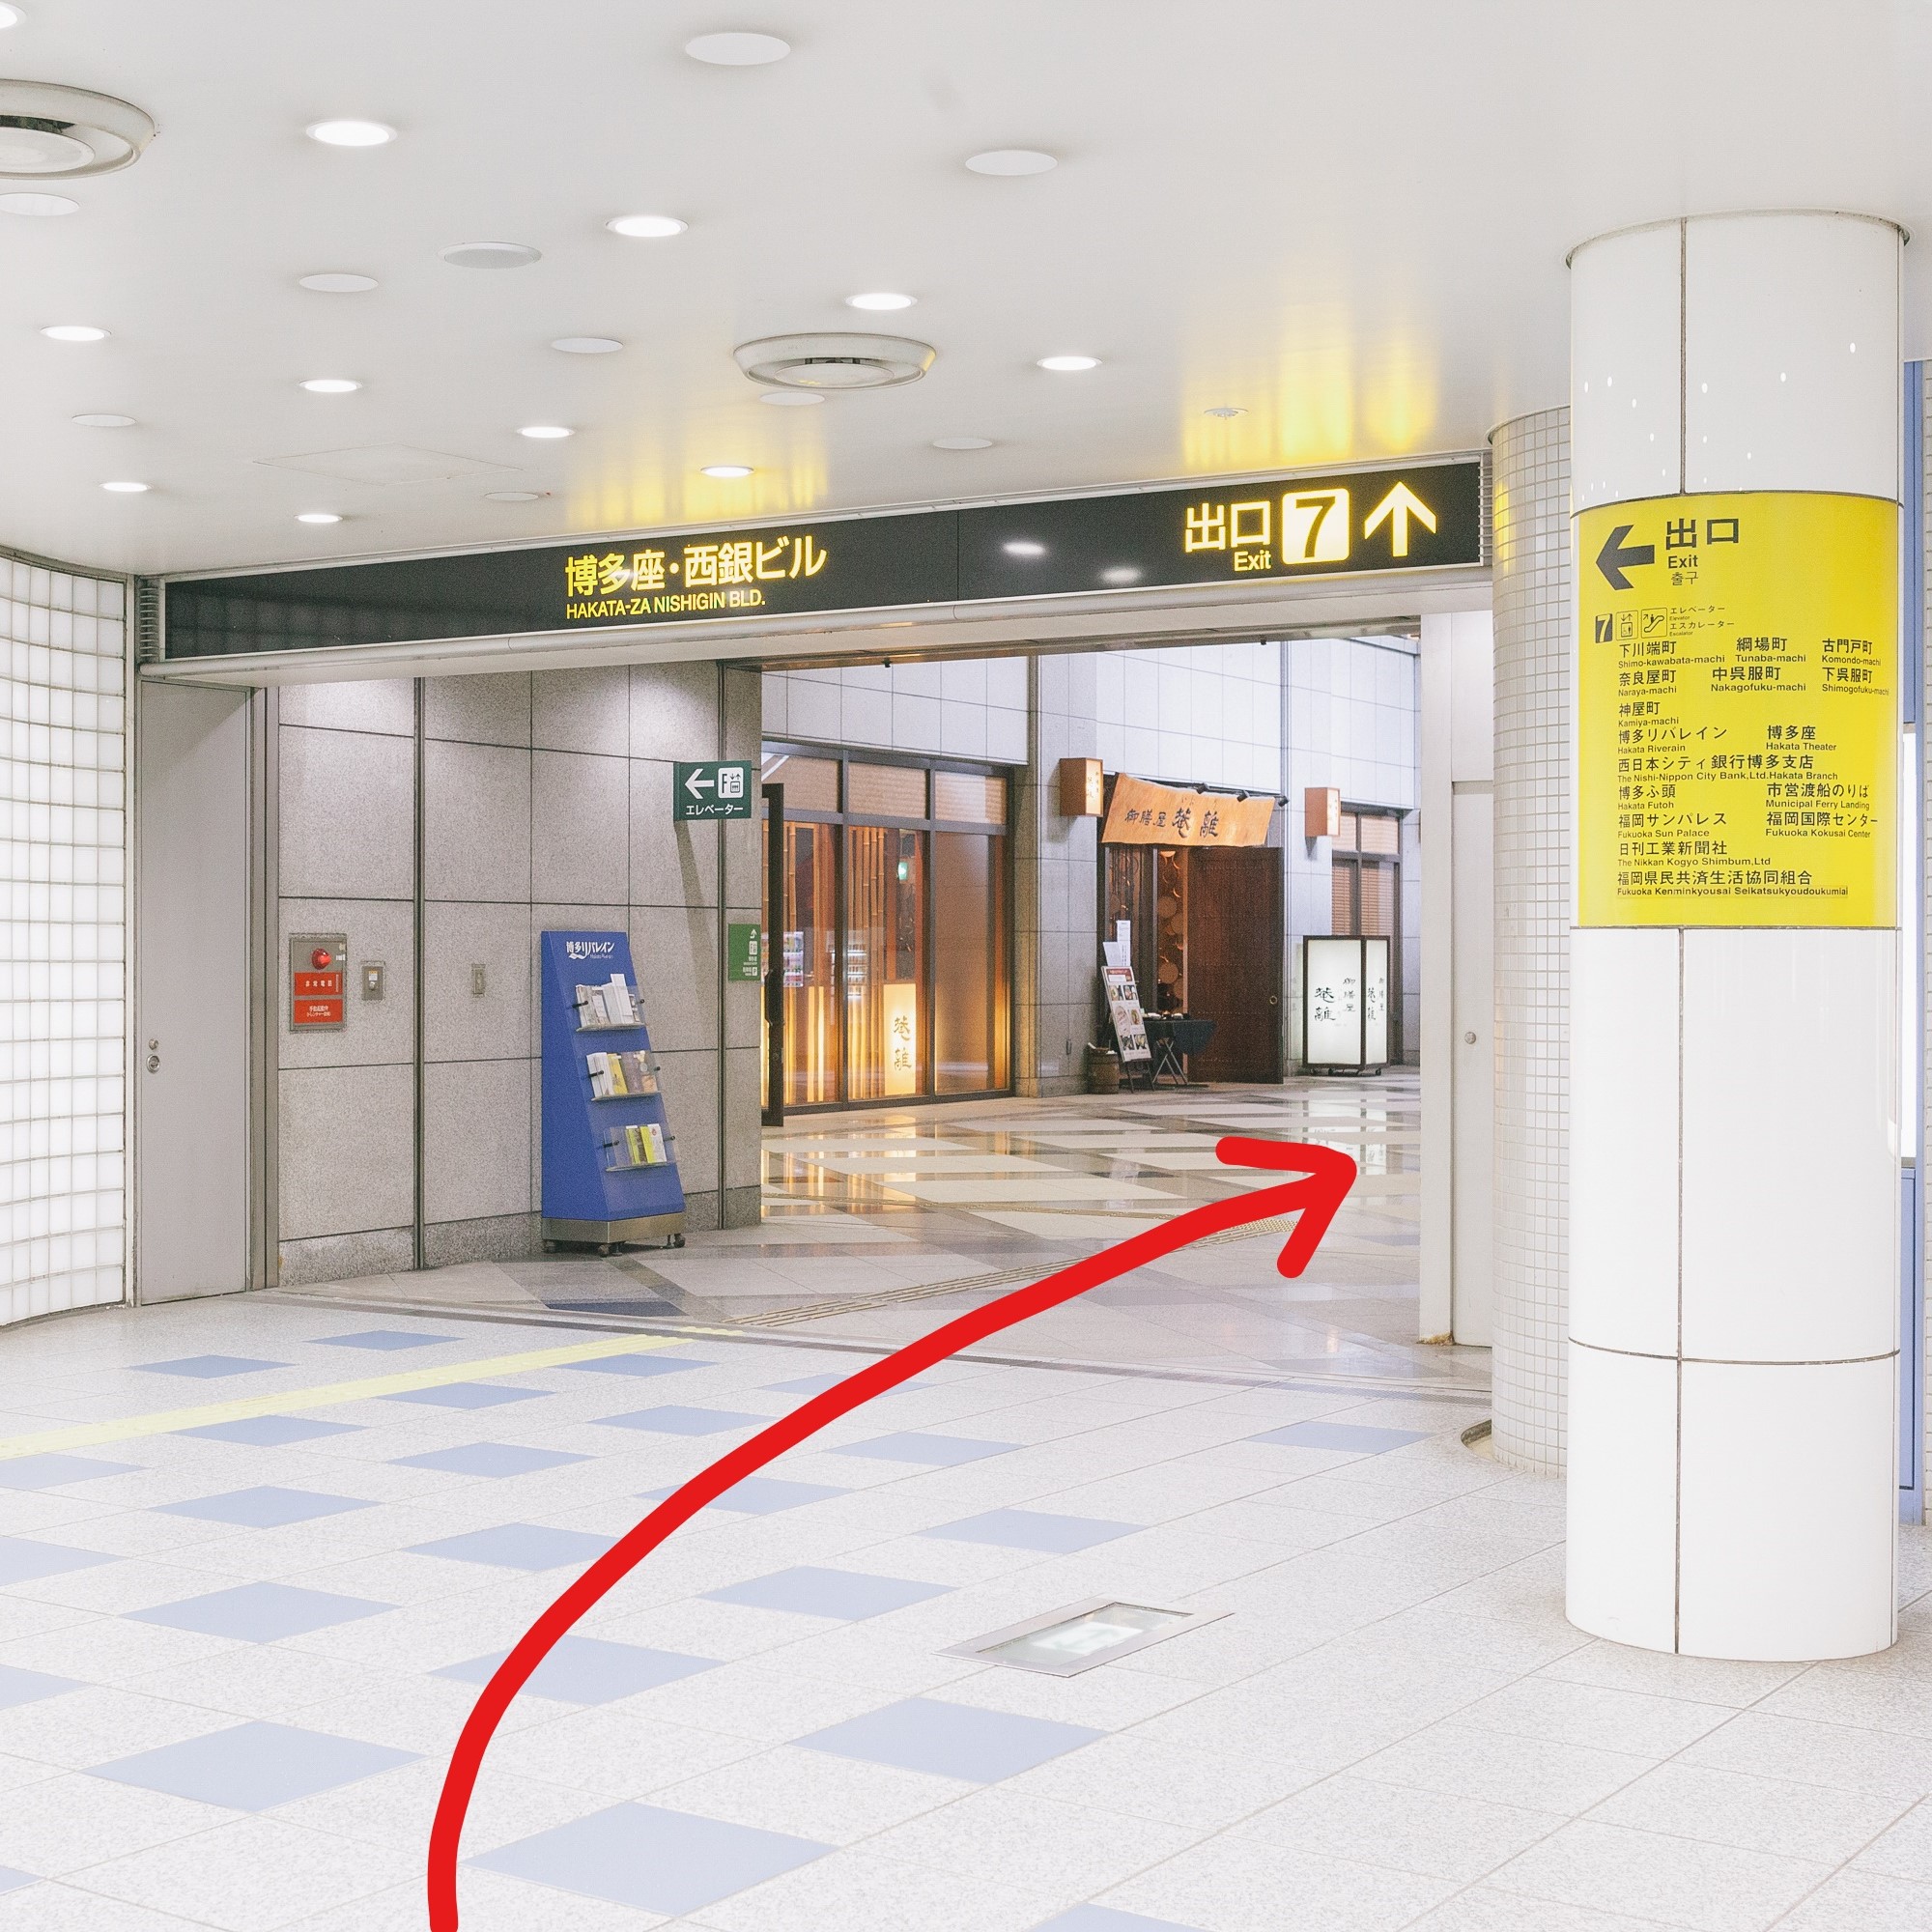 ①地下鉄 空港線 中洲川端駅で下車。7番出口を上がります。